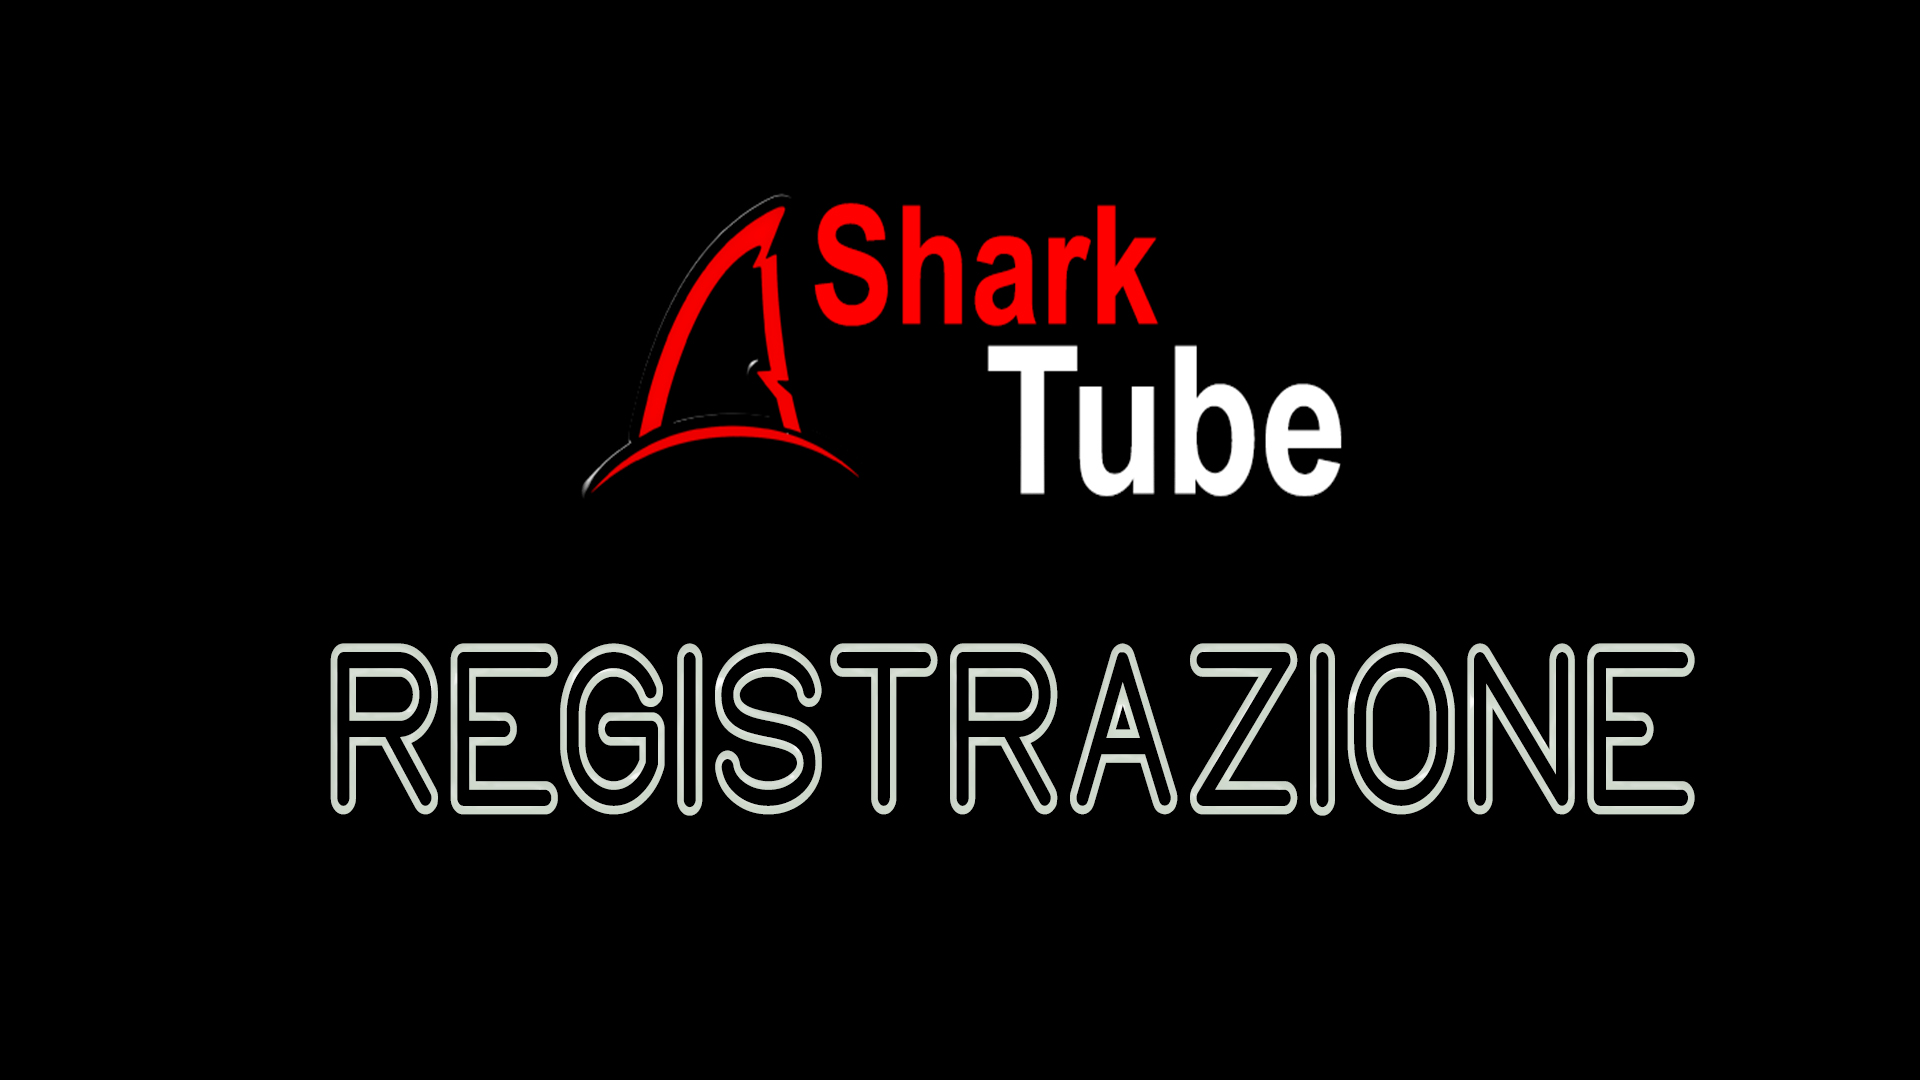 Registrazione Shark Tube